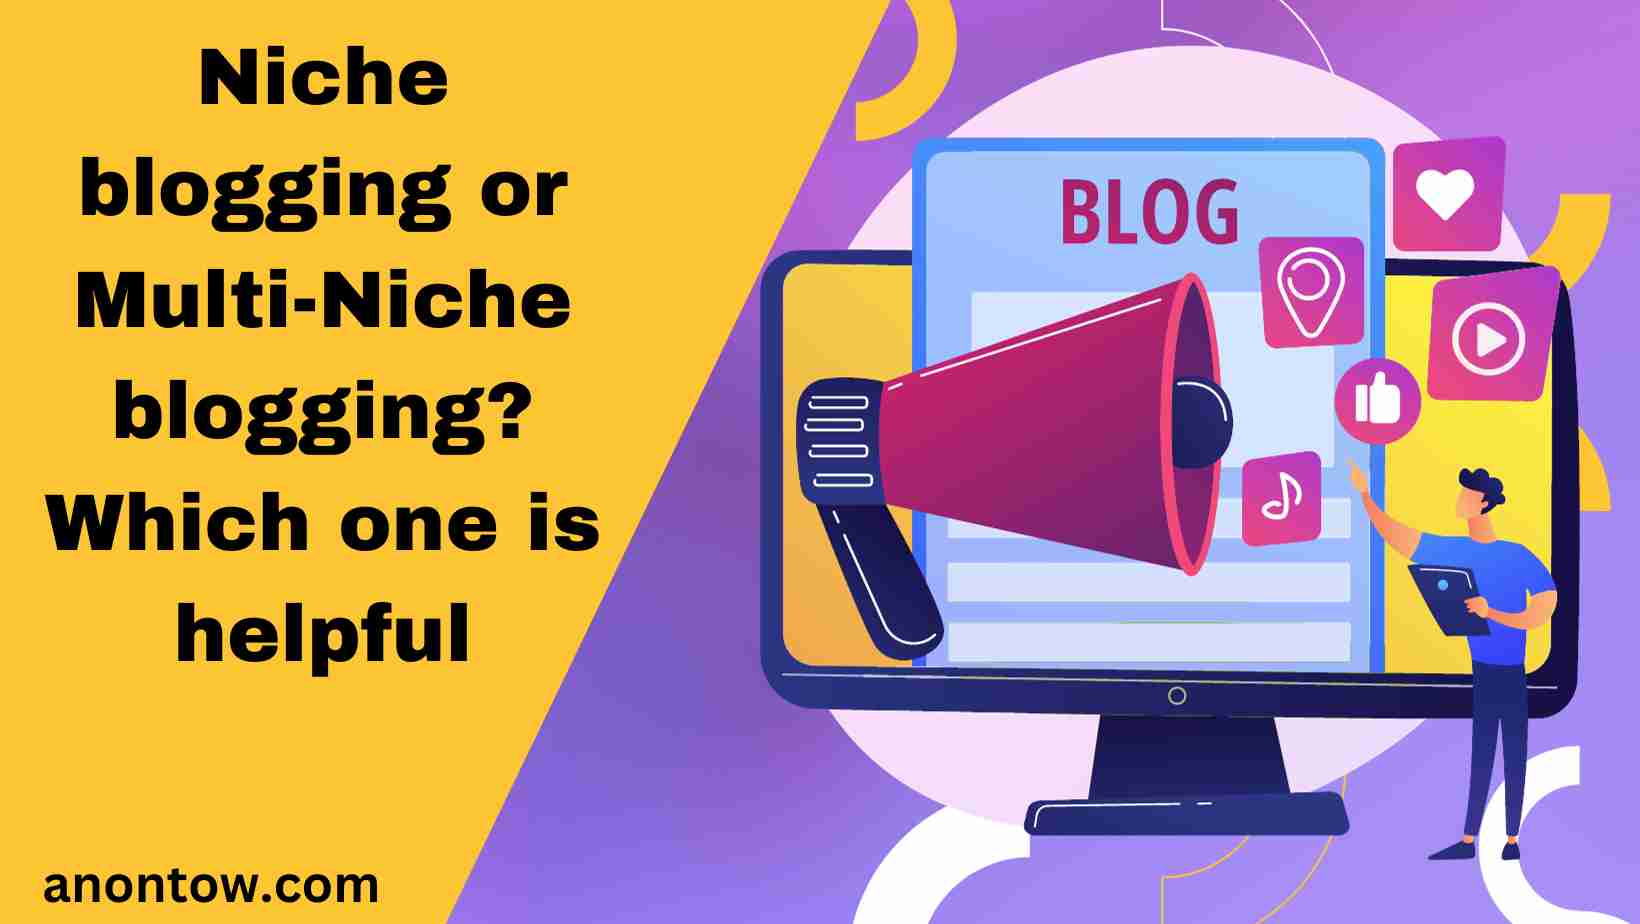 Niche blogging or Multi-Niche blogging? Which one is helpful